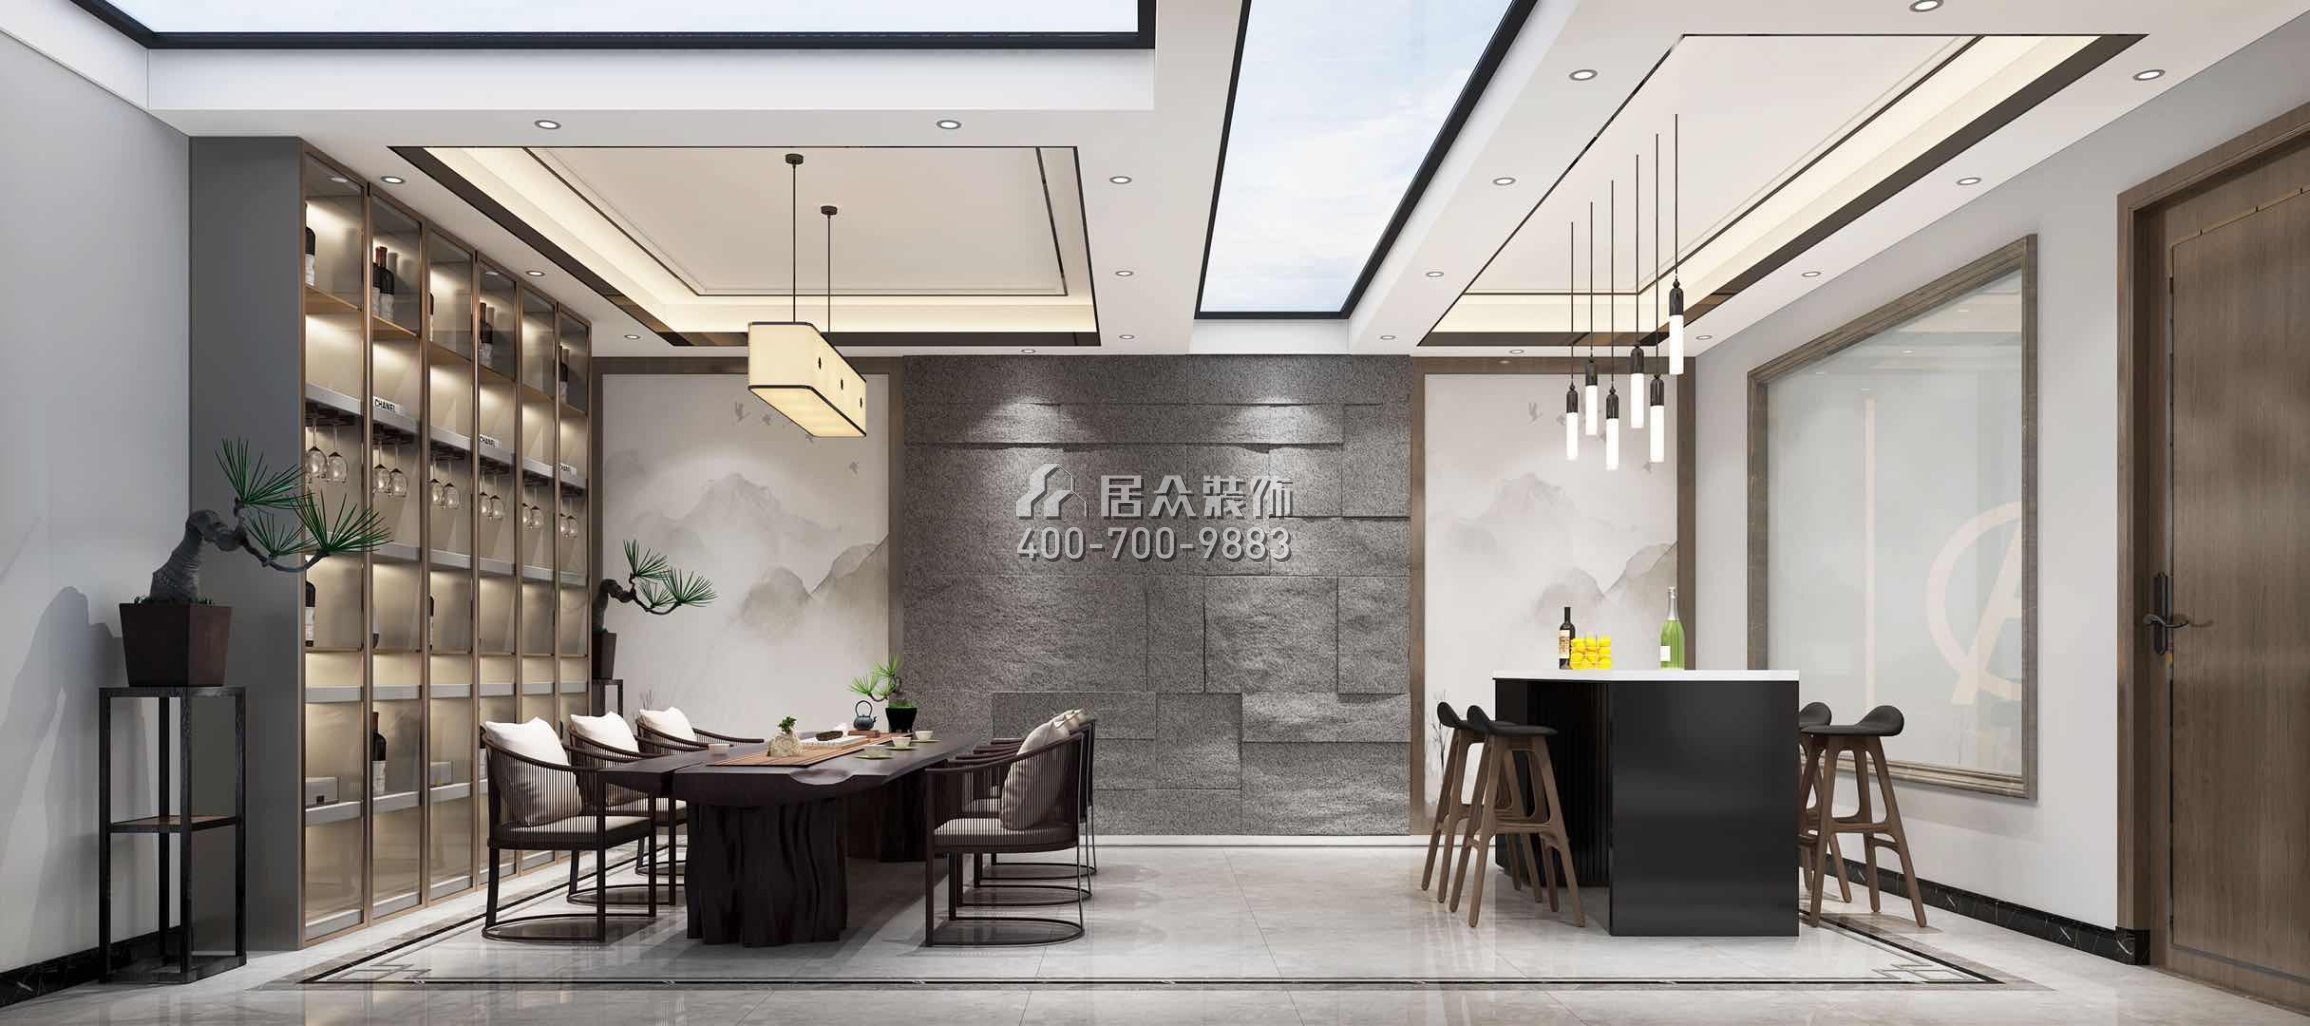 新世纪领居450平方米中式风格别墅户型餐厅装修效果图